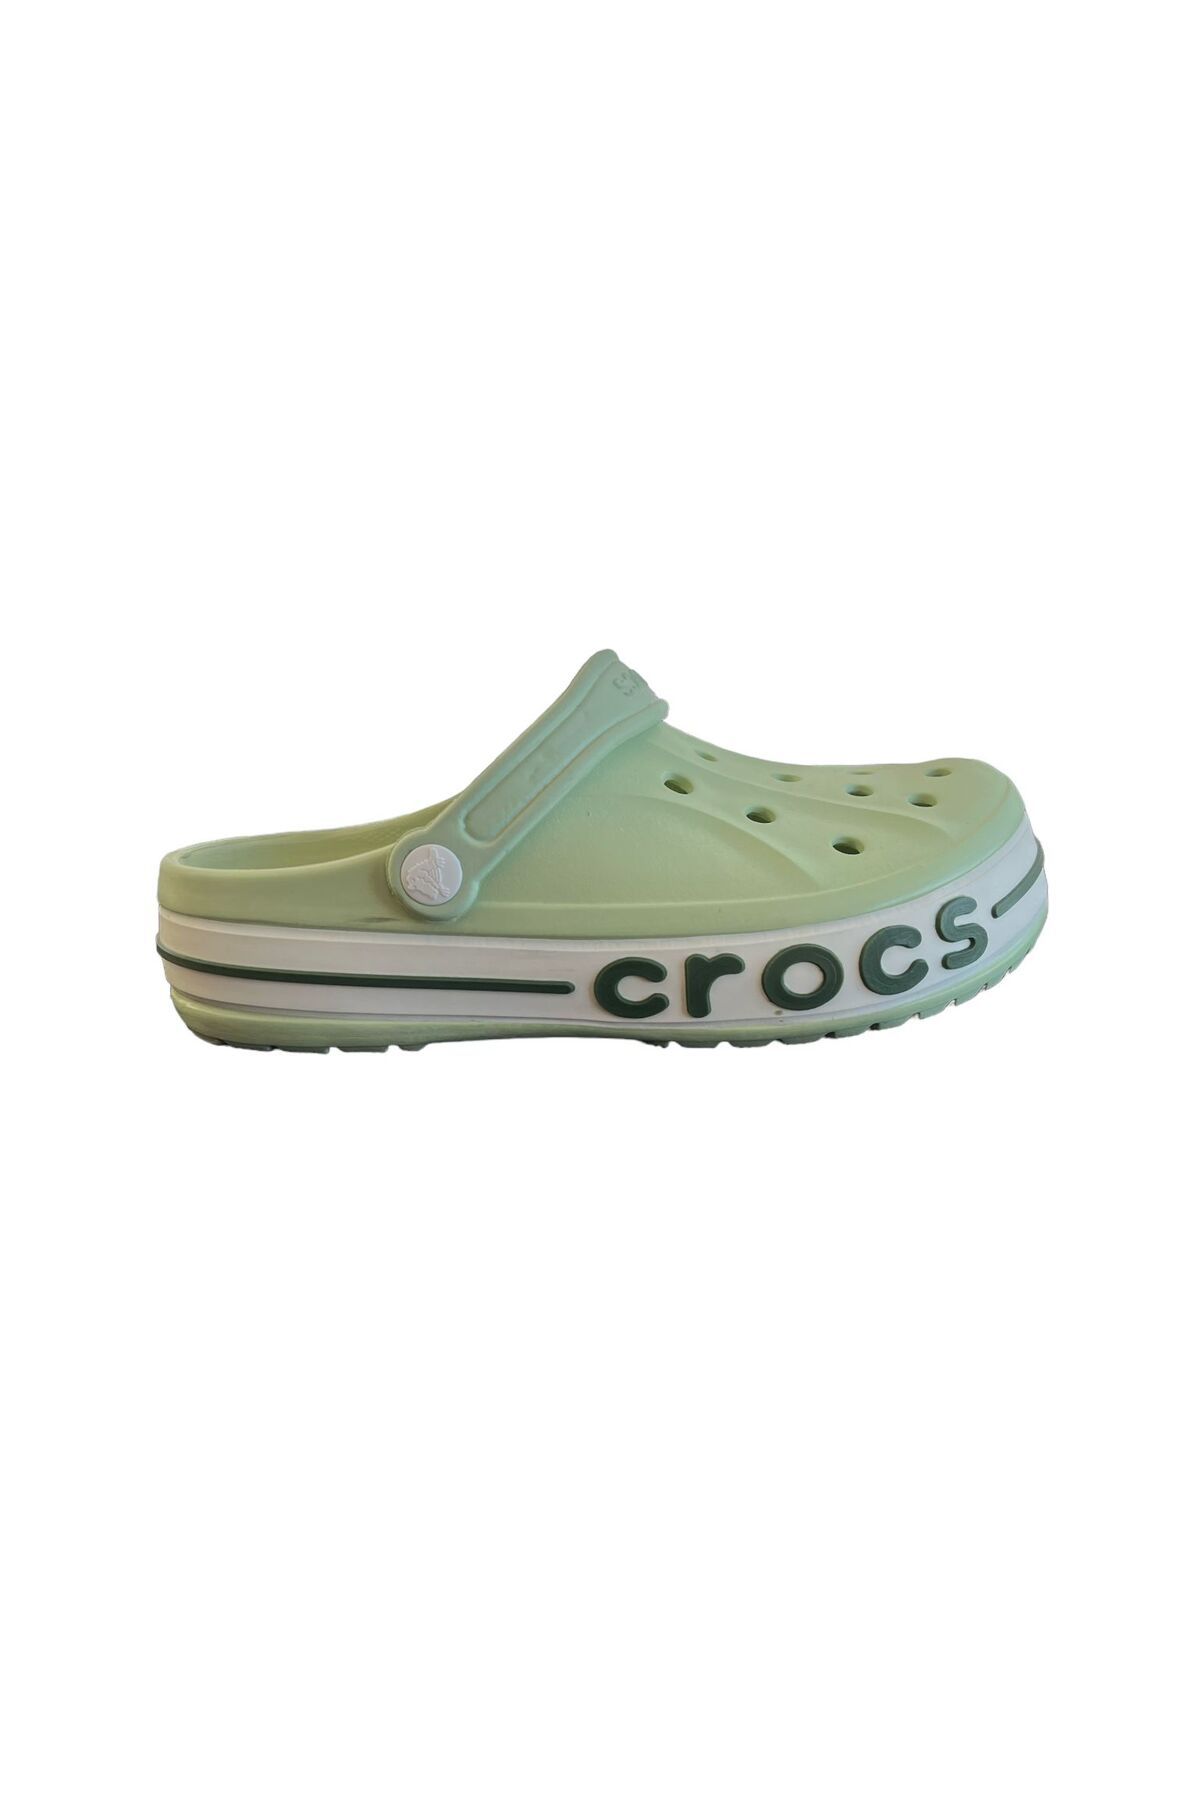 Crocs سبز بیابان